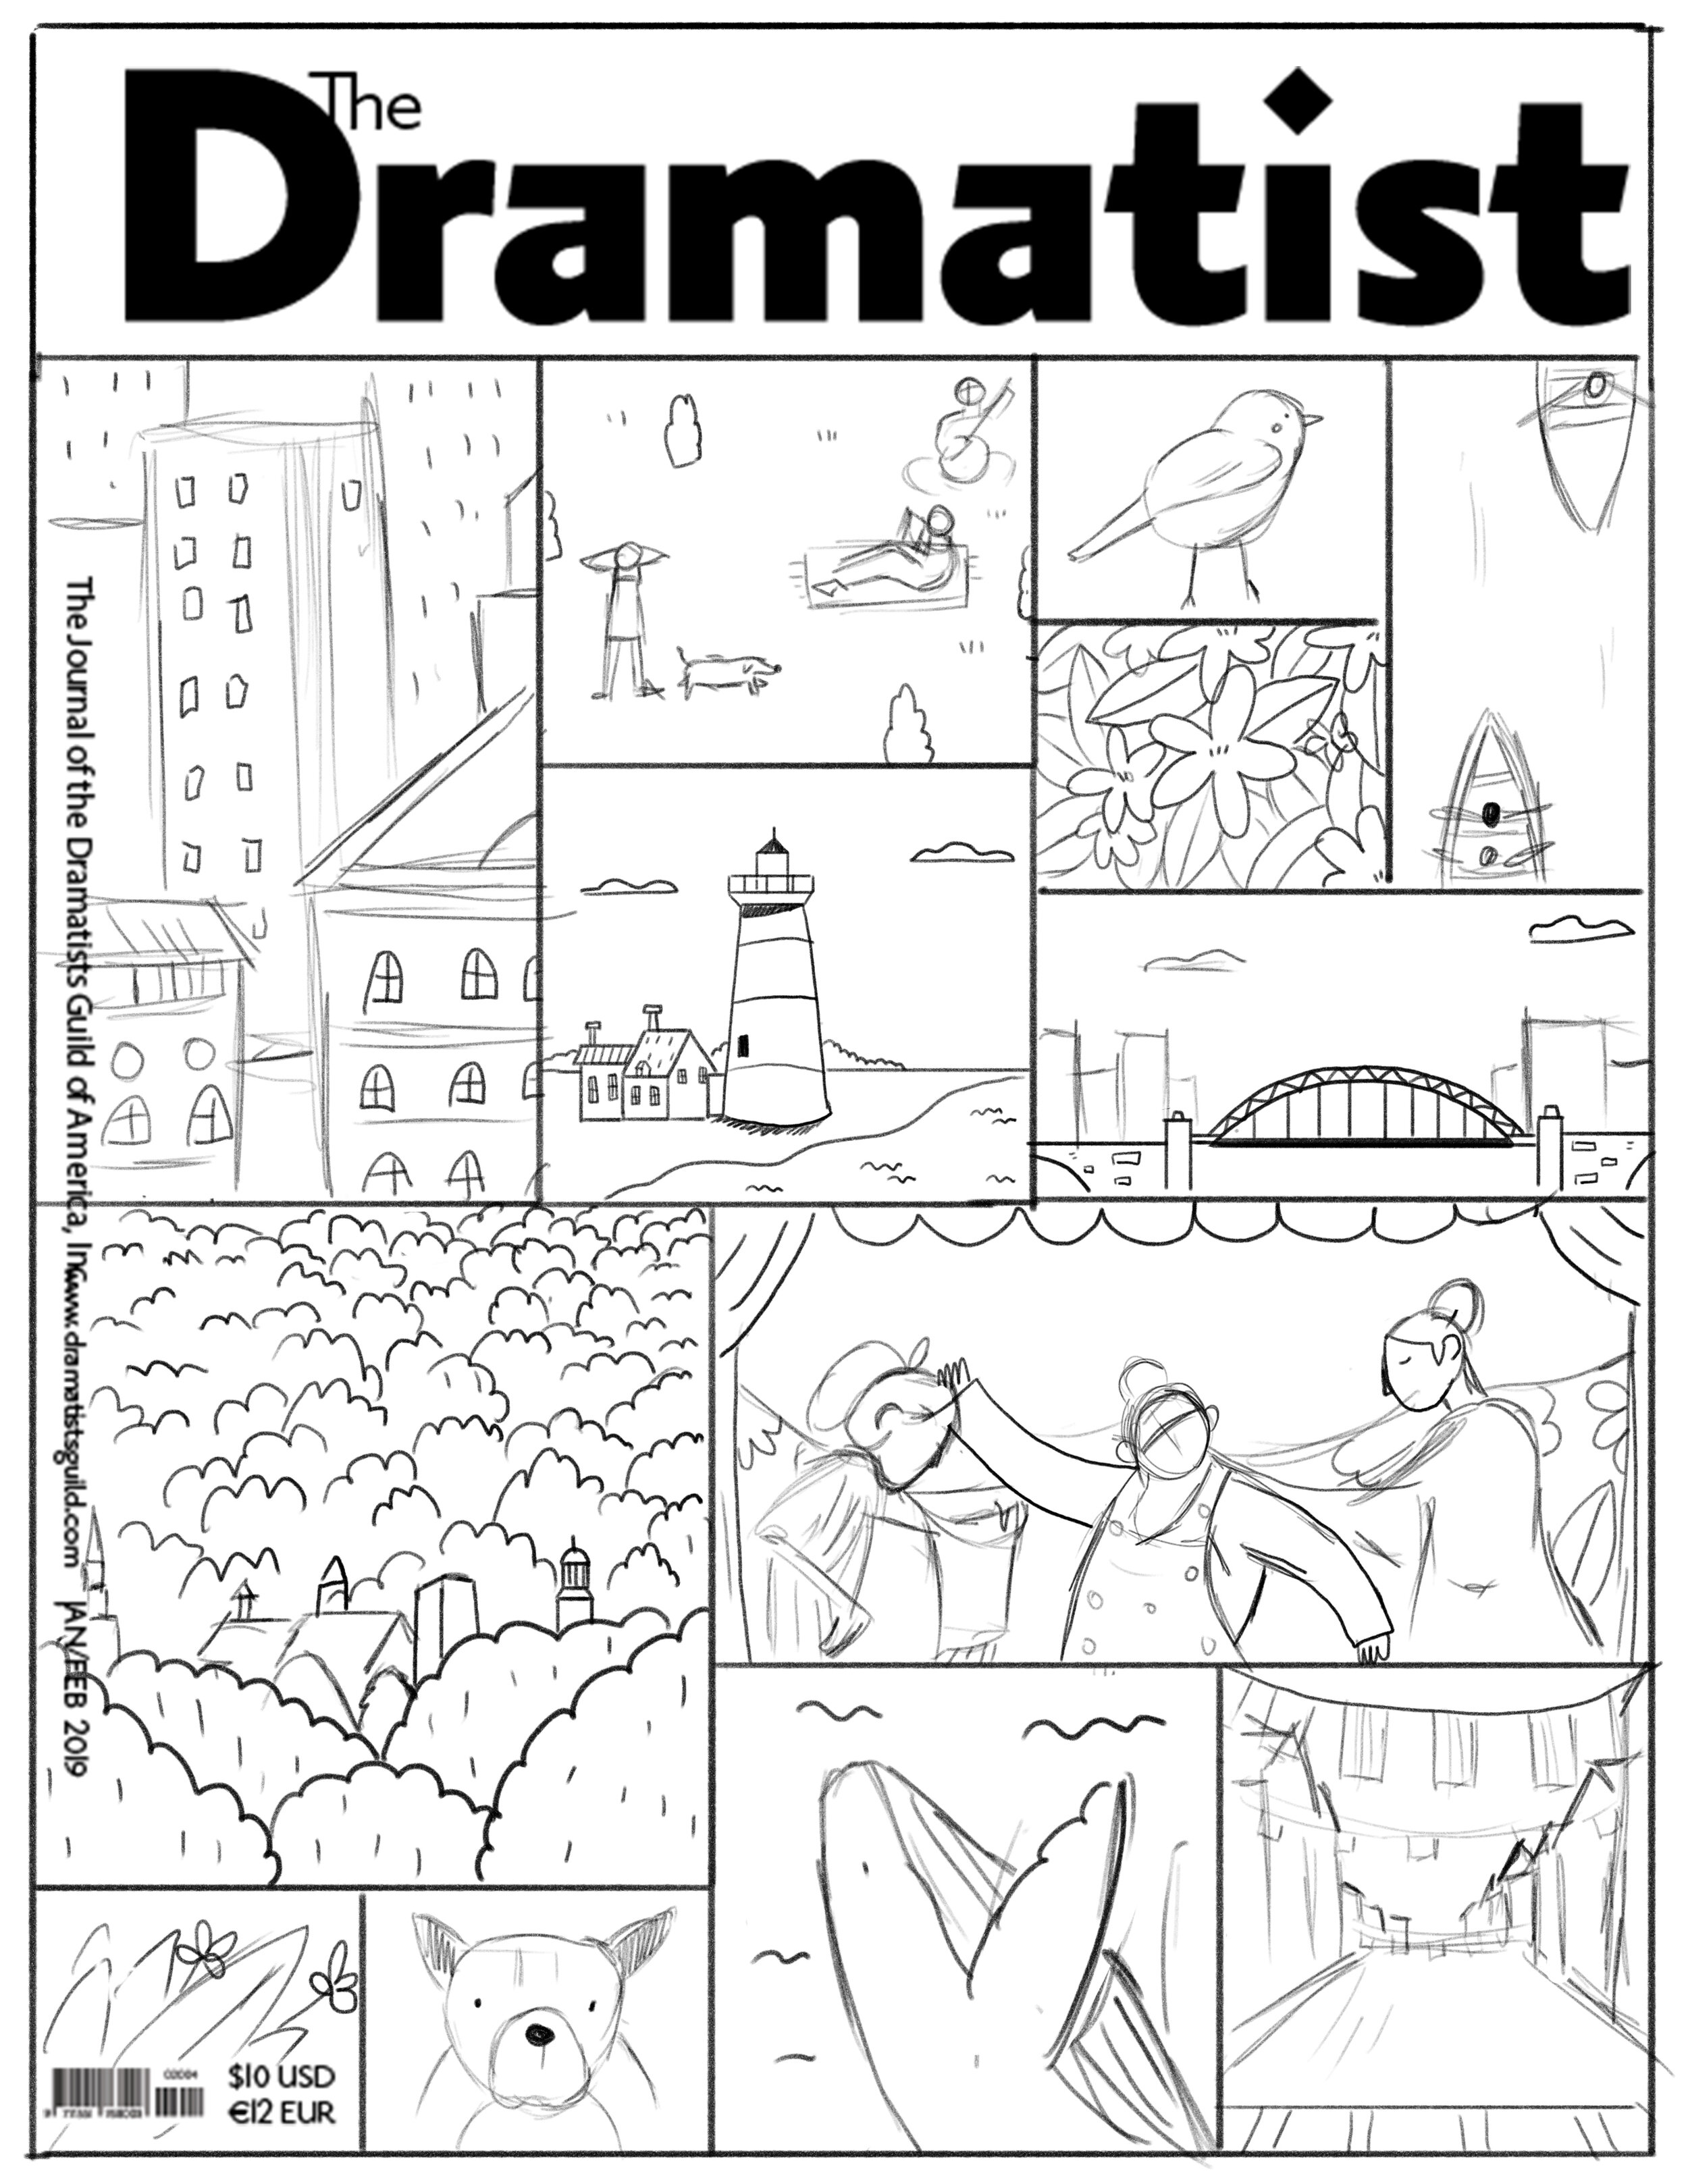 Dramatist Cover_wip.jpg